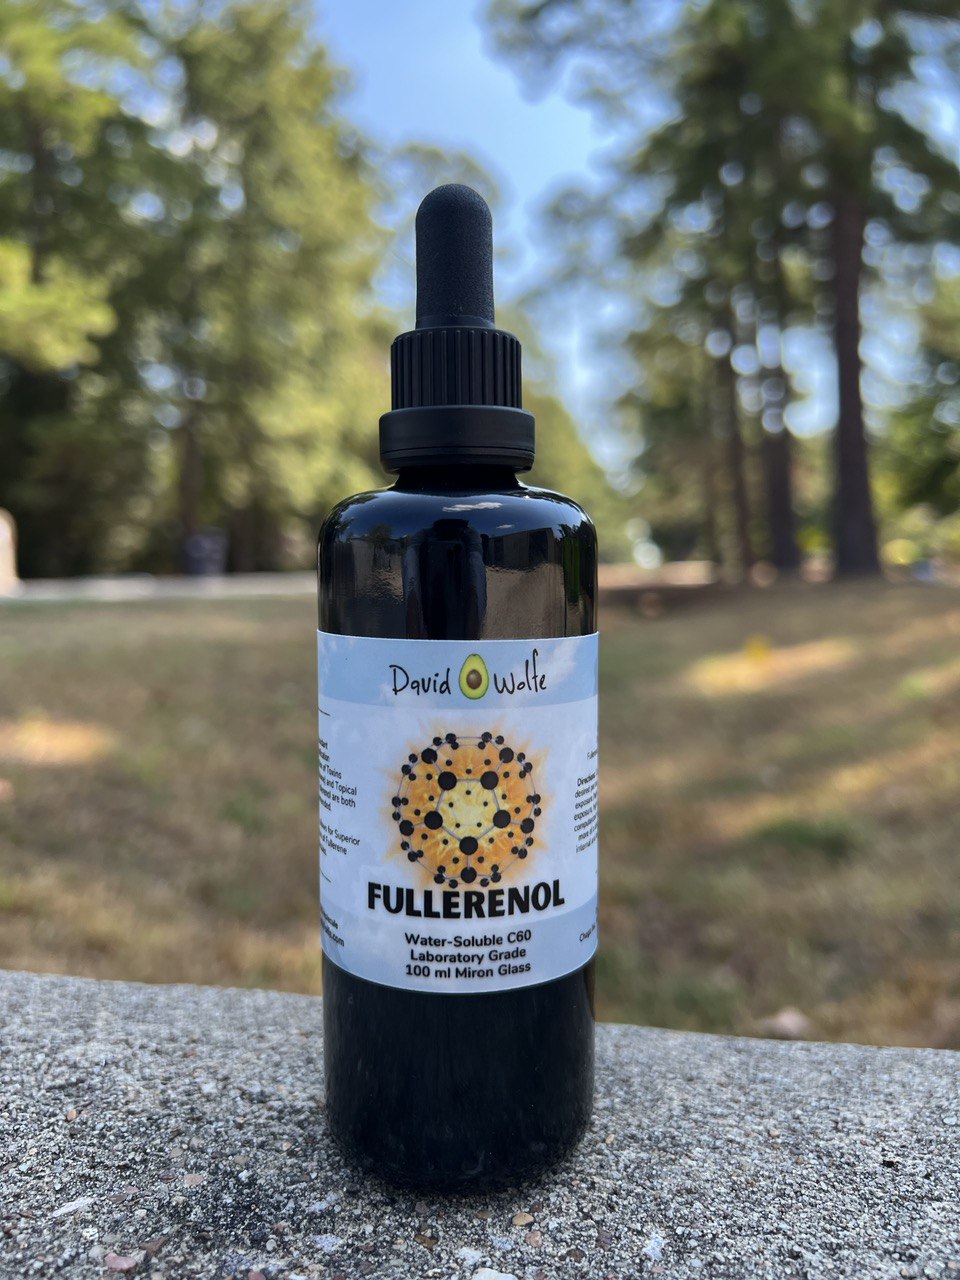 Fullerenol — Miracle C60 Molecule